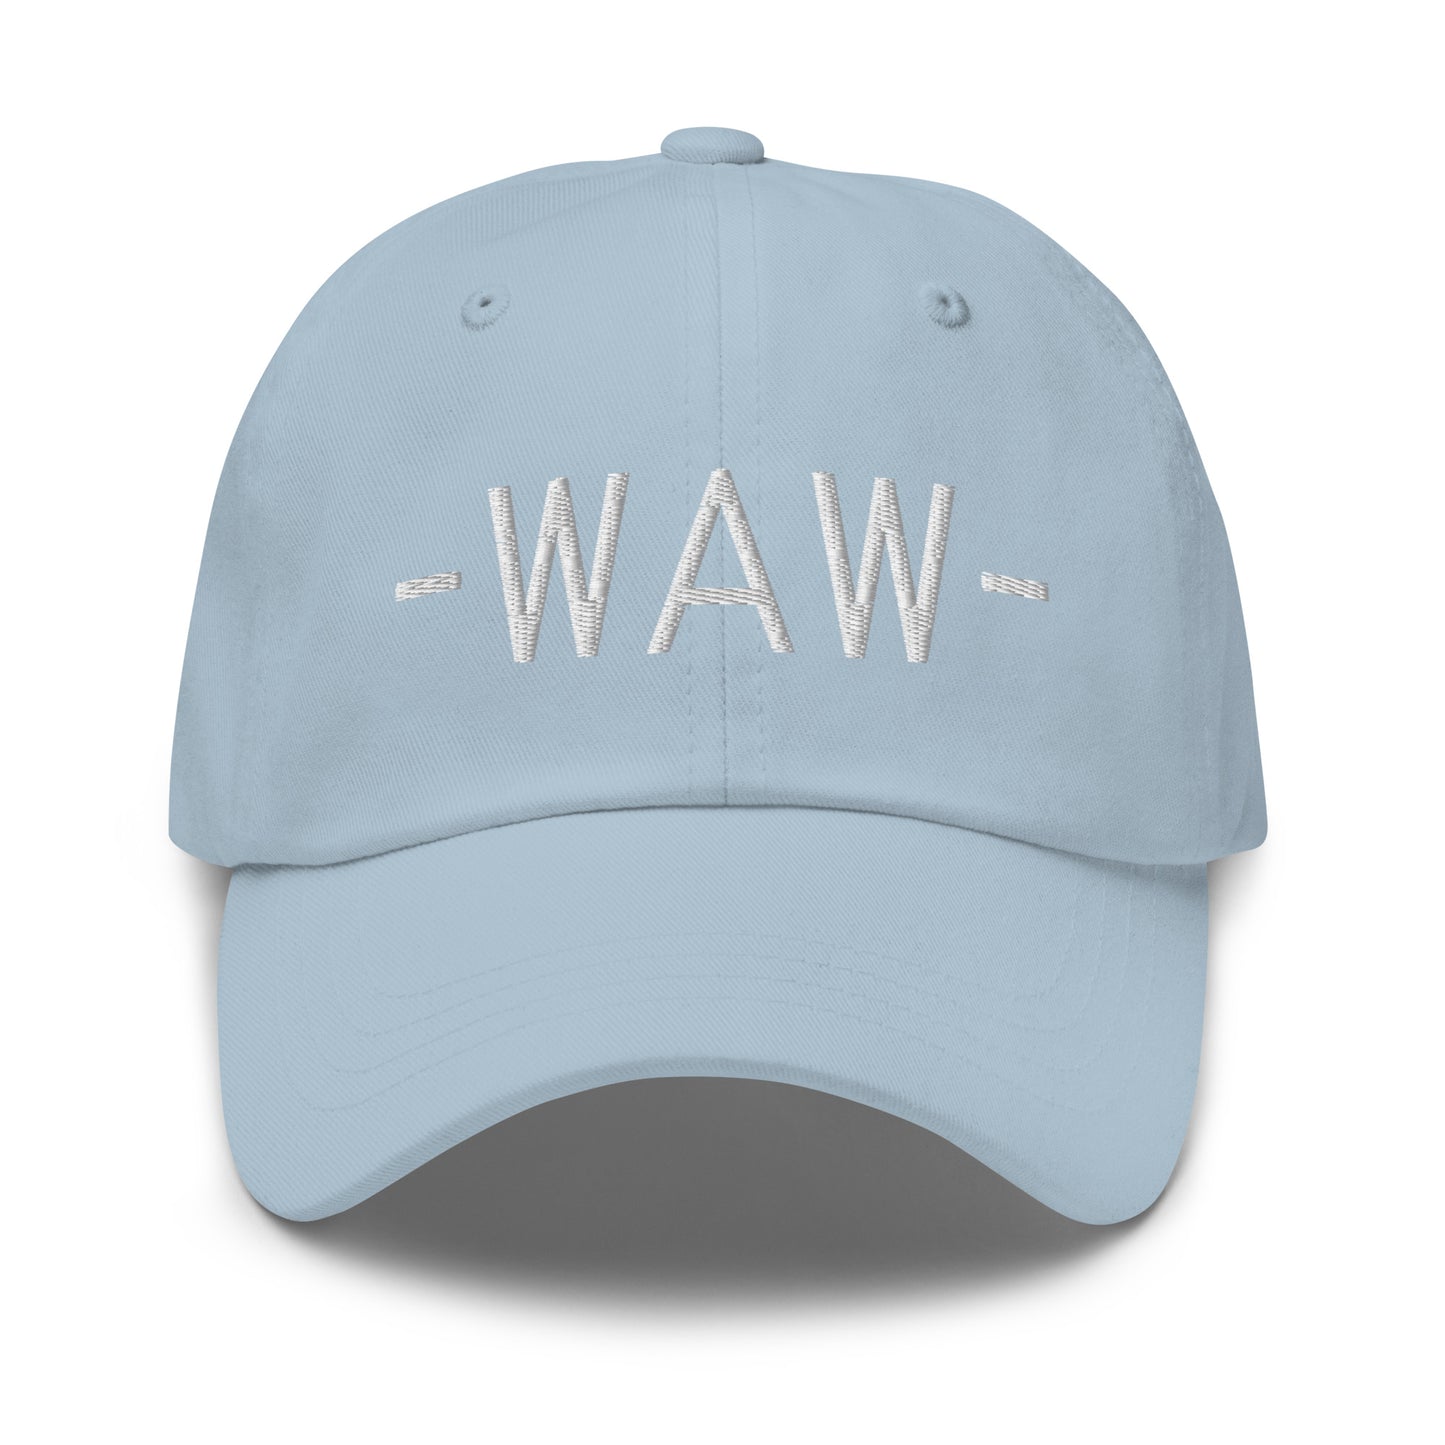 Souvenir Baseball Cap - White • WAW Warsaw • YHM Designs - Image 27